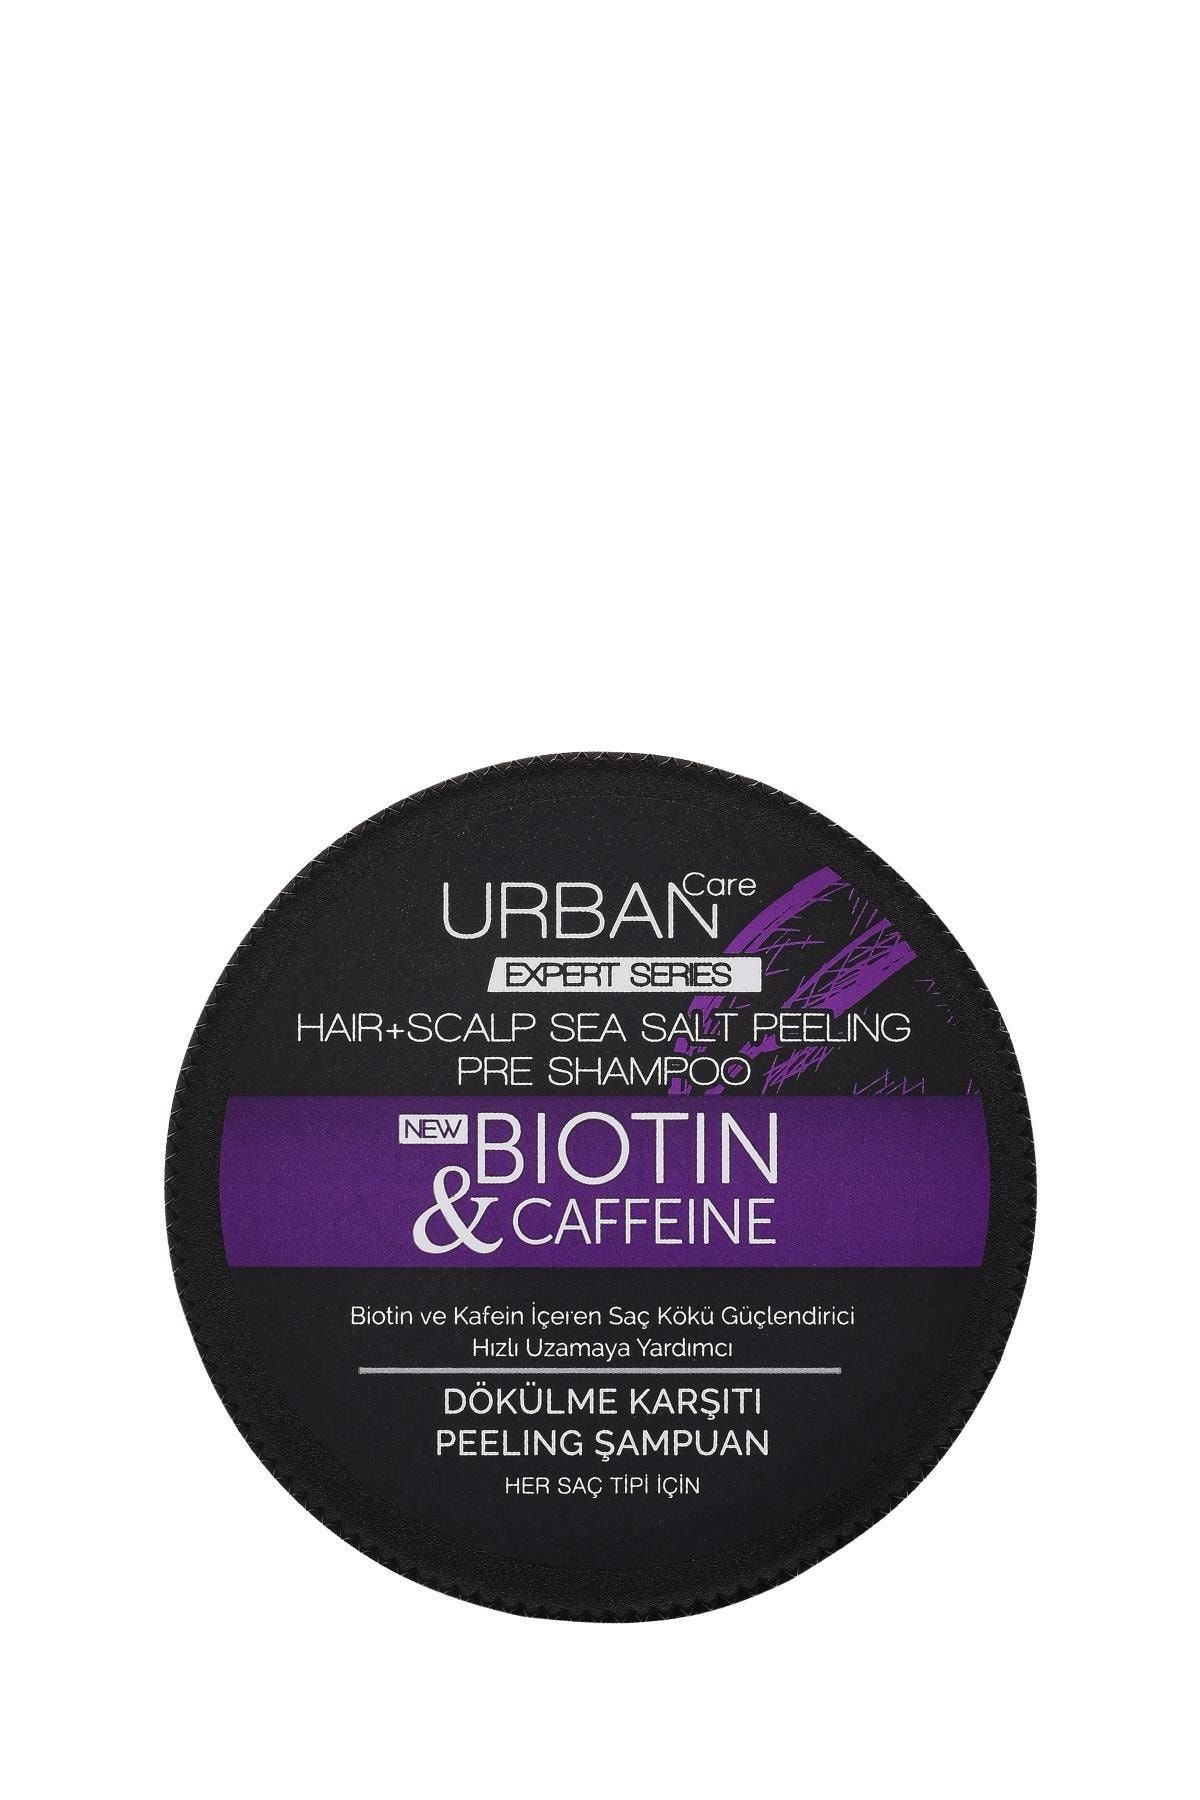 Urban Care Biotin & Caffeine Kafein Içeren Saç Kökü Güçlendirici Peeling Şampuan 200 Ml